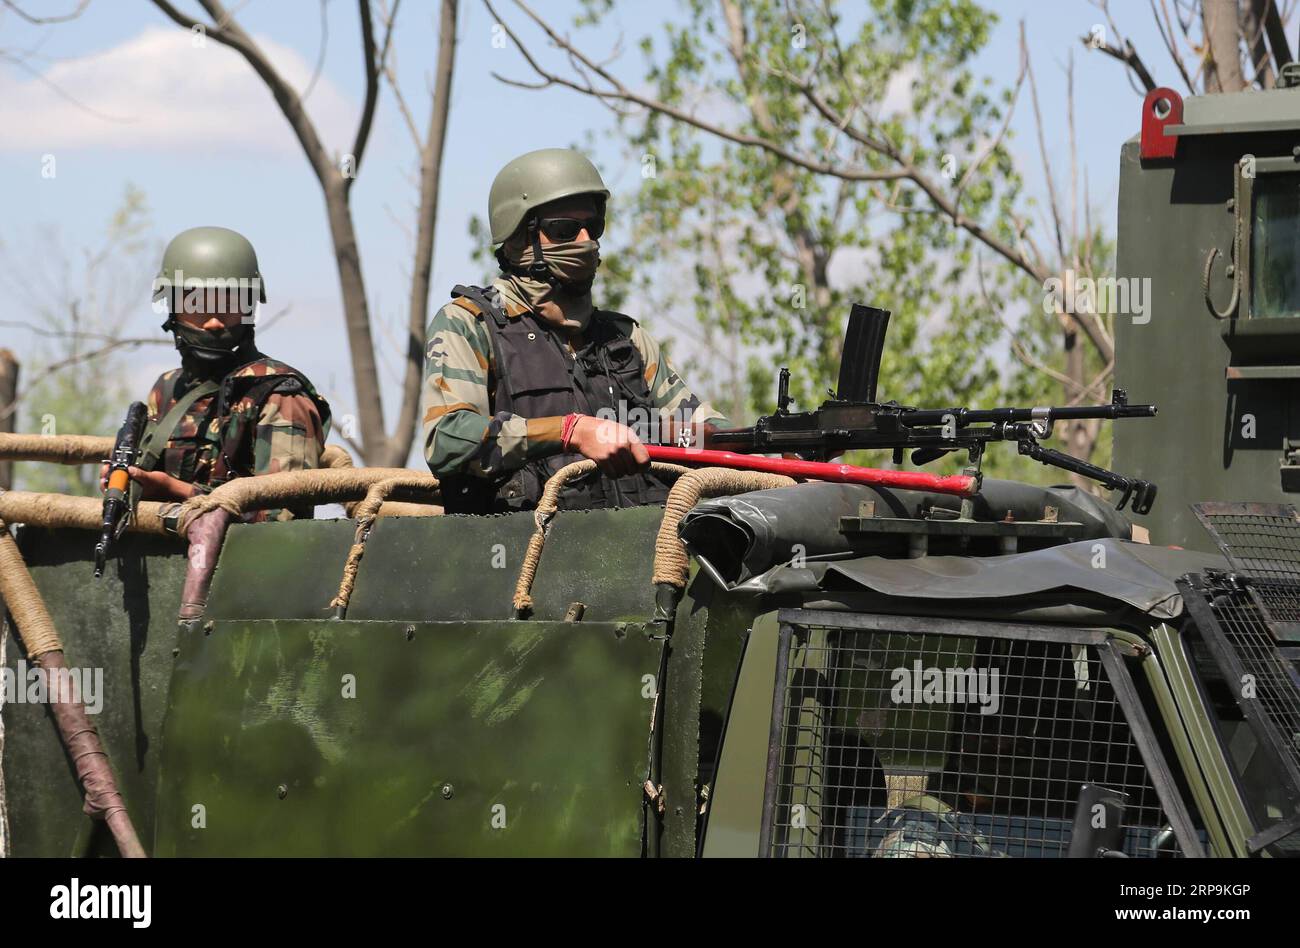 (190410) -- SRINAGAR, 10 avril 2019 (Xinhua) -- des troupes paramilitaires indiennes arrêtent la circulation civile pendant le confinement de sécurité sur la route dans la banlieue de la ville de Srinagar, capitale estivale du Cachemire contrôlé par l'Inde, 10 avril 2019. La circulation civile n'est pas autorisée sur l'autoroute dans le Cachemire contrôlé par l'Inde pendant deux jours par semaine (dimanche et mercredi) pendant les prochaines élections générales indiennes, ont déclaré les responsables. (Xinhua/Javed Dar) CACHEMIRE-SRINAGAR-CONFINEMENT DE SÉCURITÉ SUR LA ROUTE PUBLICATIONxNOTxINxCHN Banque D'Images